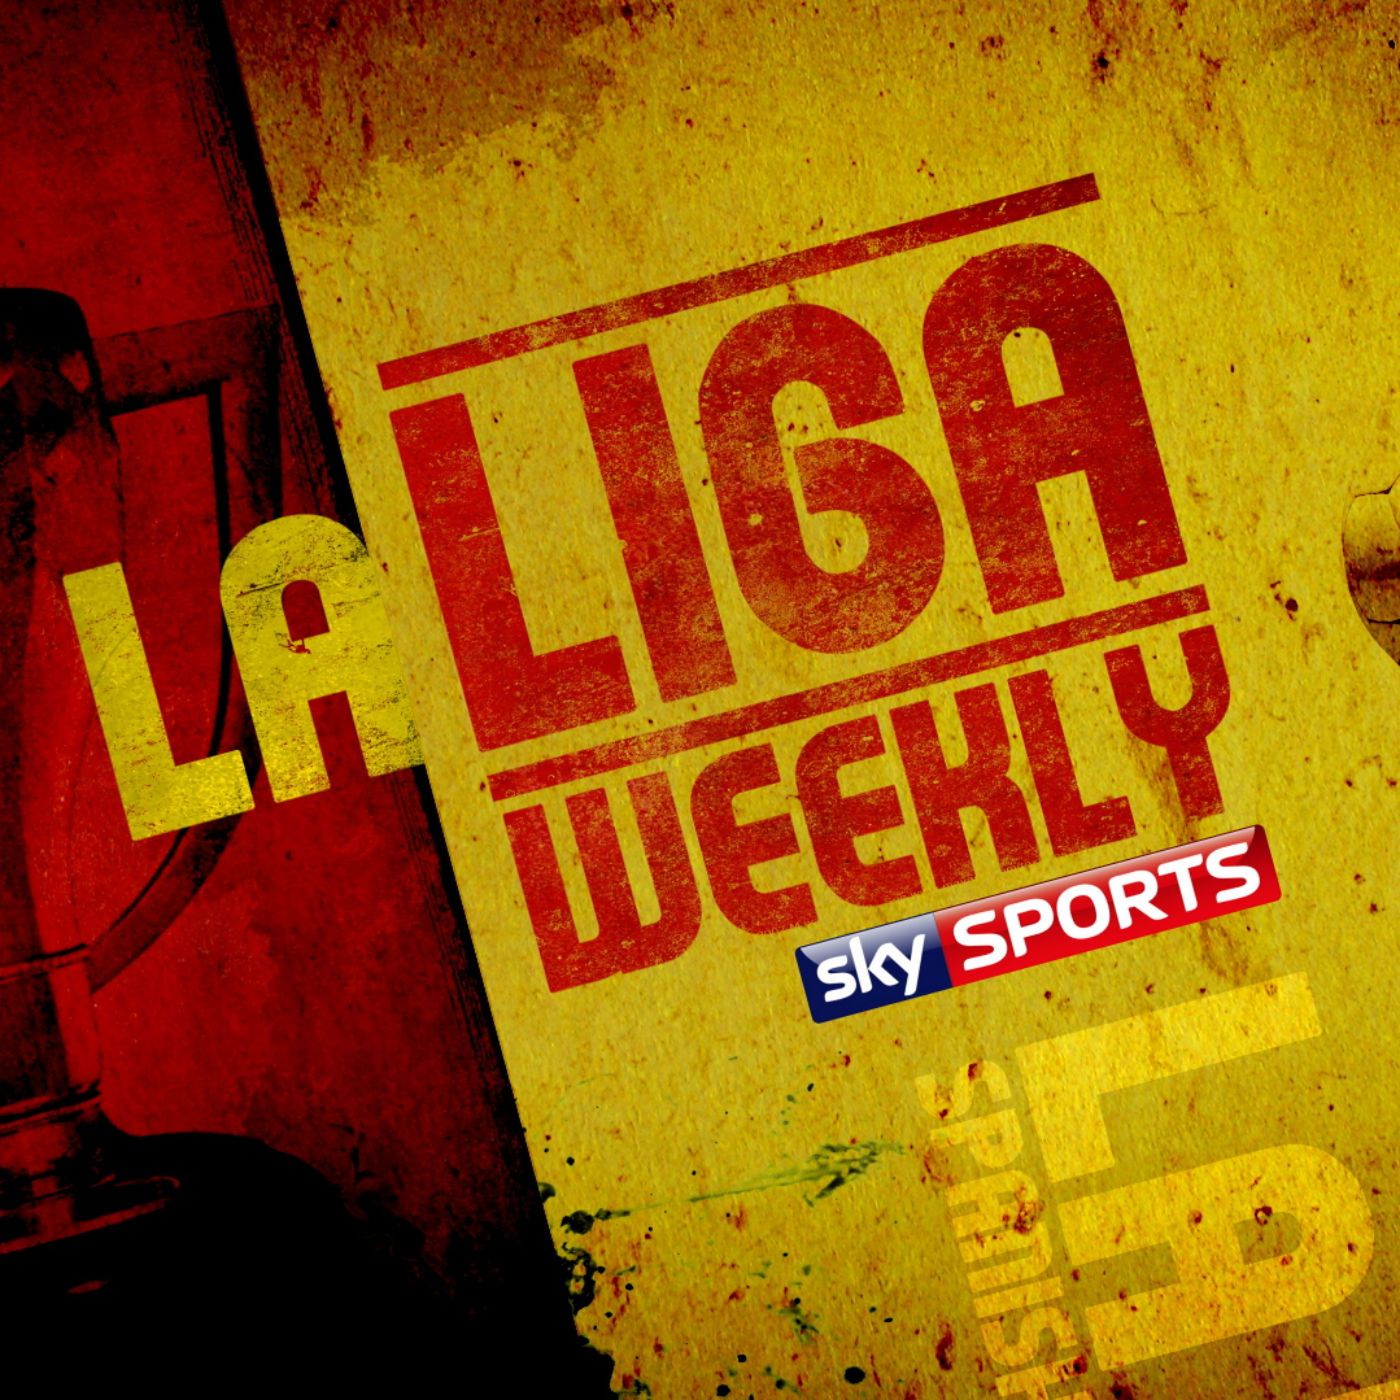 La Liga Weekly - 22nd May